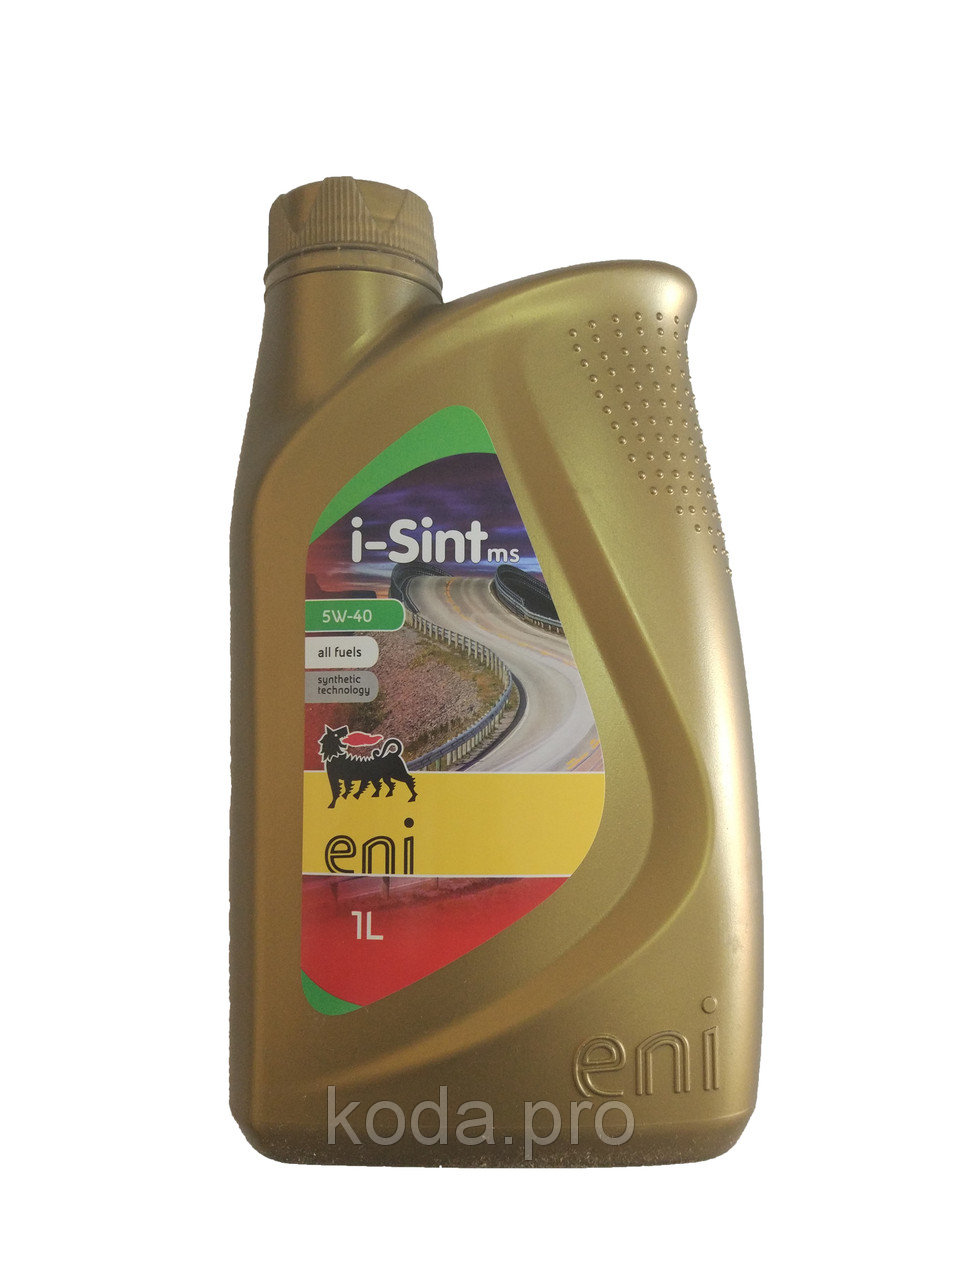   Eni i-Sint MS 5w-40  1,0 л. синтетическое моторное масло